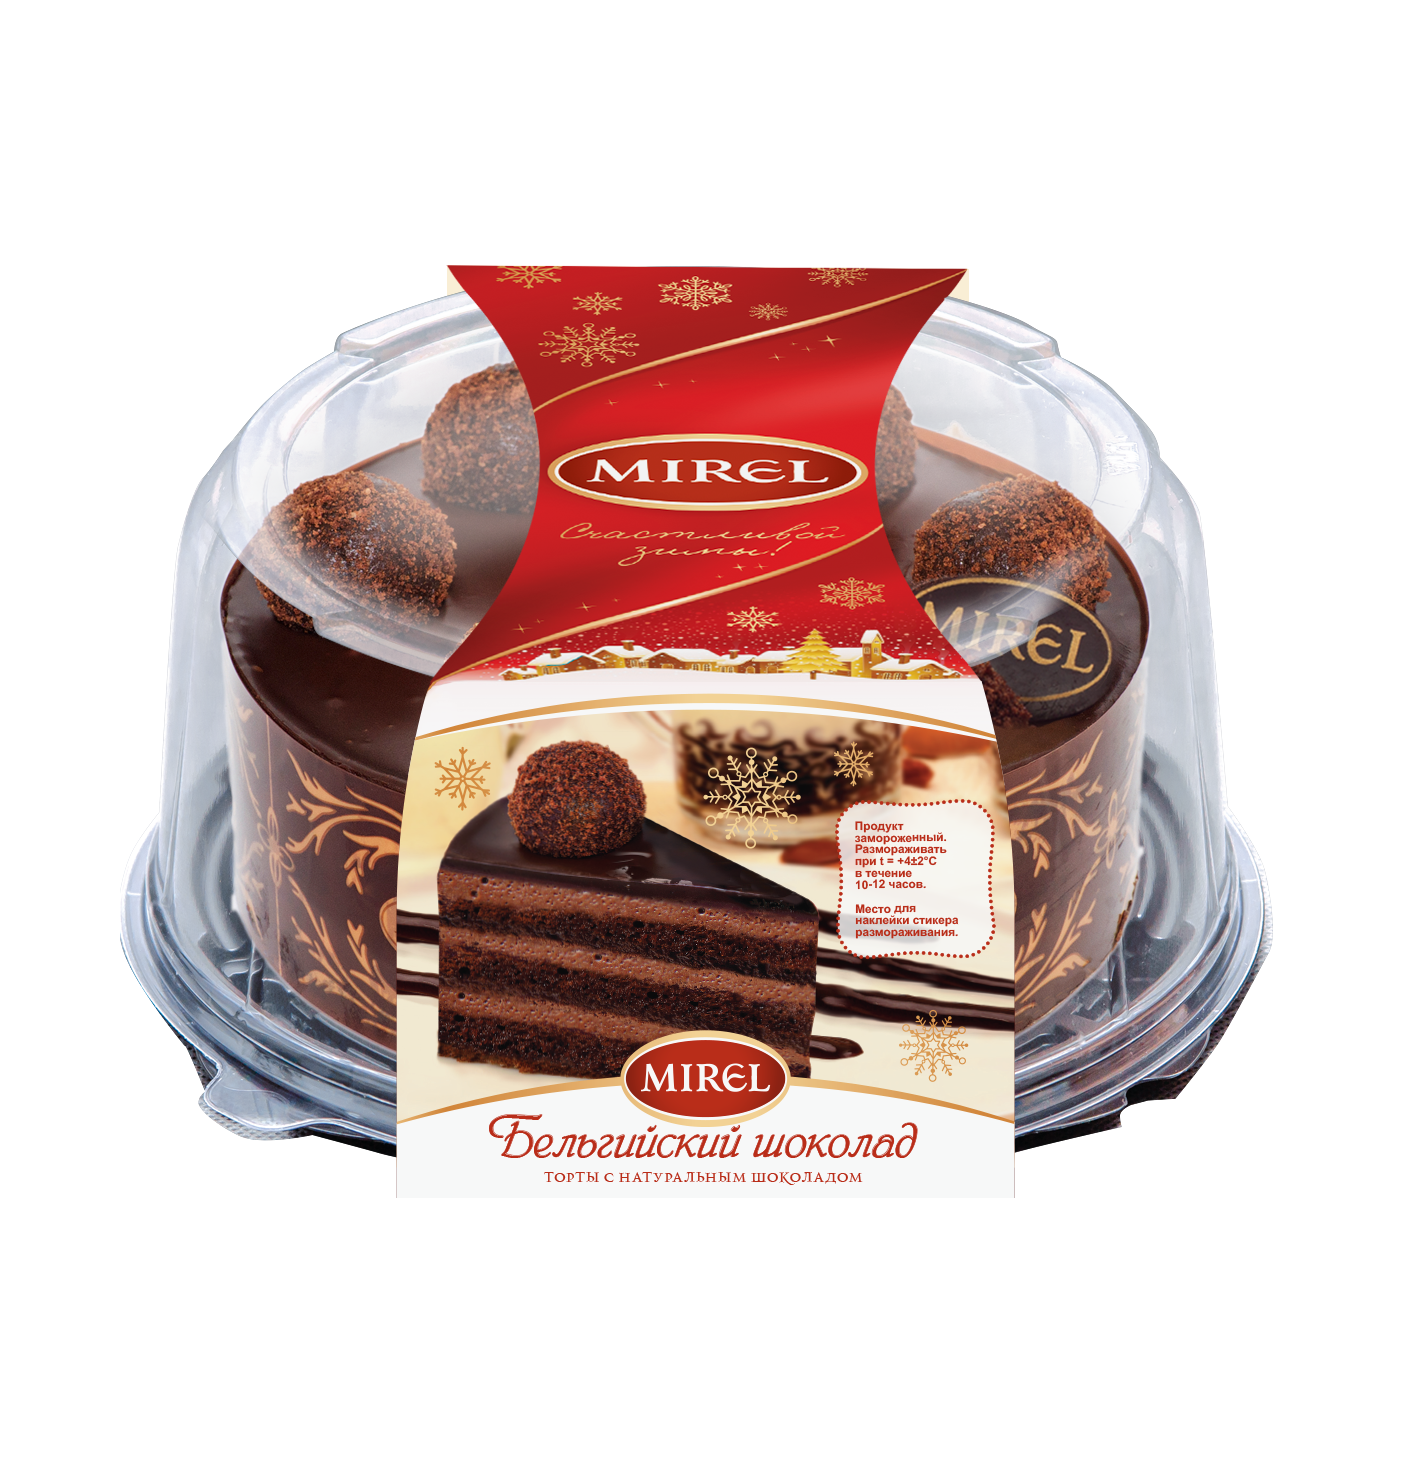 Торт Мирель бельгийский шоколад. Шоколадный торт Мирель бельгийский шоколад. Торт Mirel бельгийский шоколад. Торт тирамису Мирель. Мирель торты купить в спб